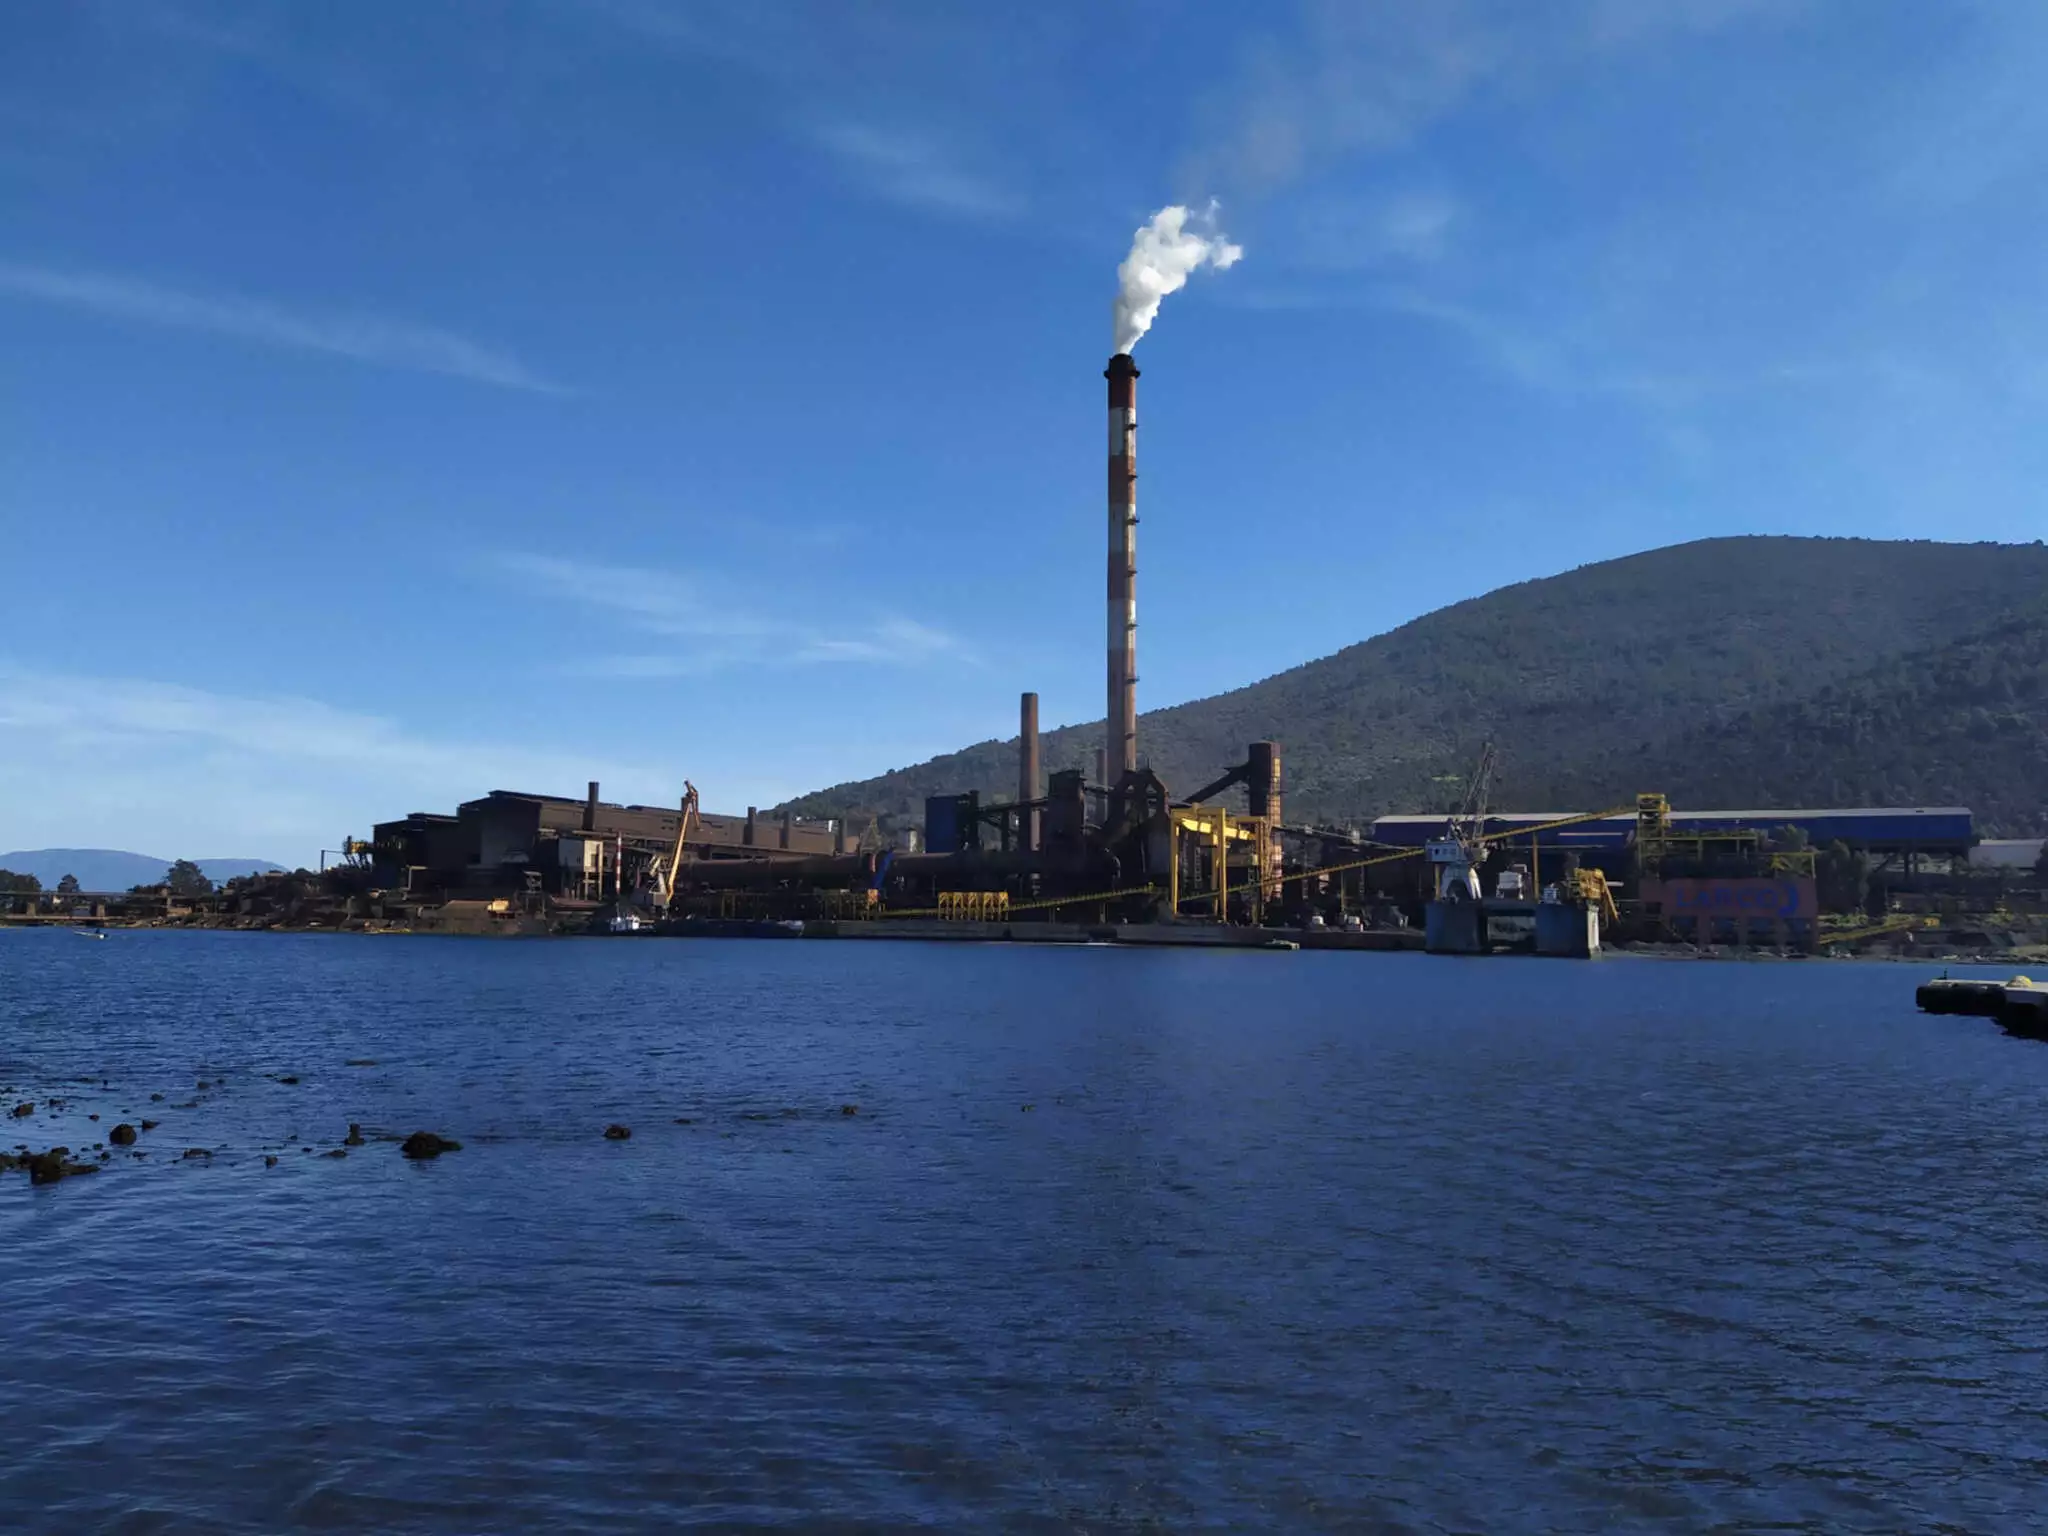 ΛΑΡΚΟ: Κατάληψη στο εργοστάσιο της εταιρείας στη Λάρυμνα Φθιώτιδας – Οι εργαζόμενοι ζητούν την επαναλειτουργία του